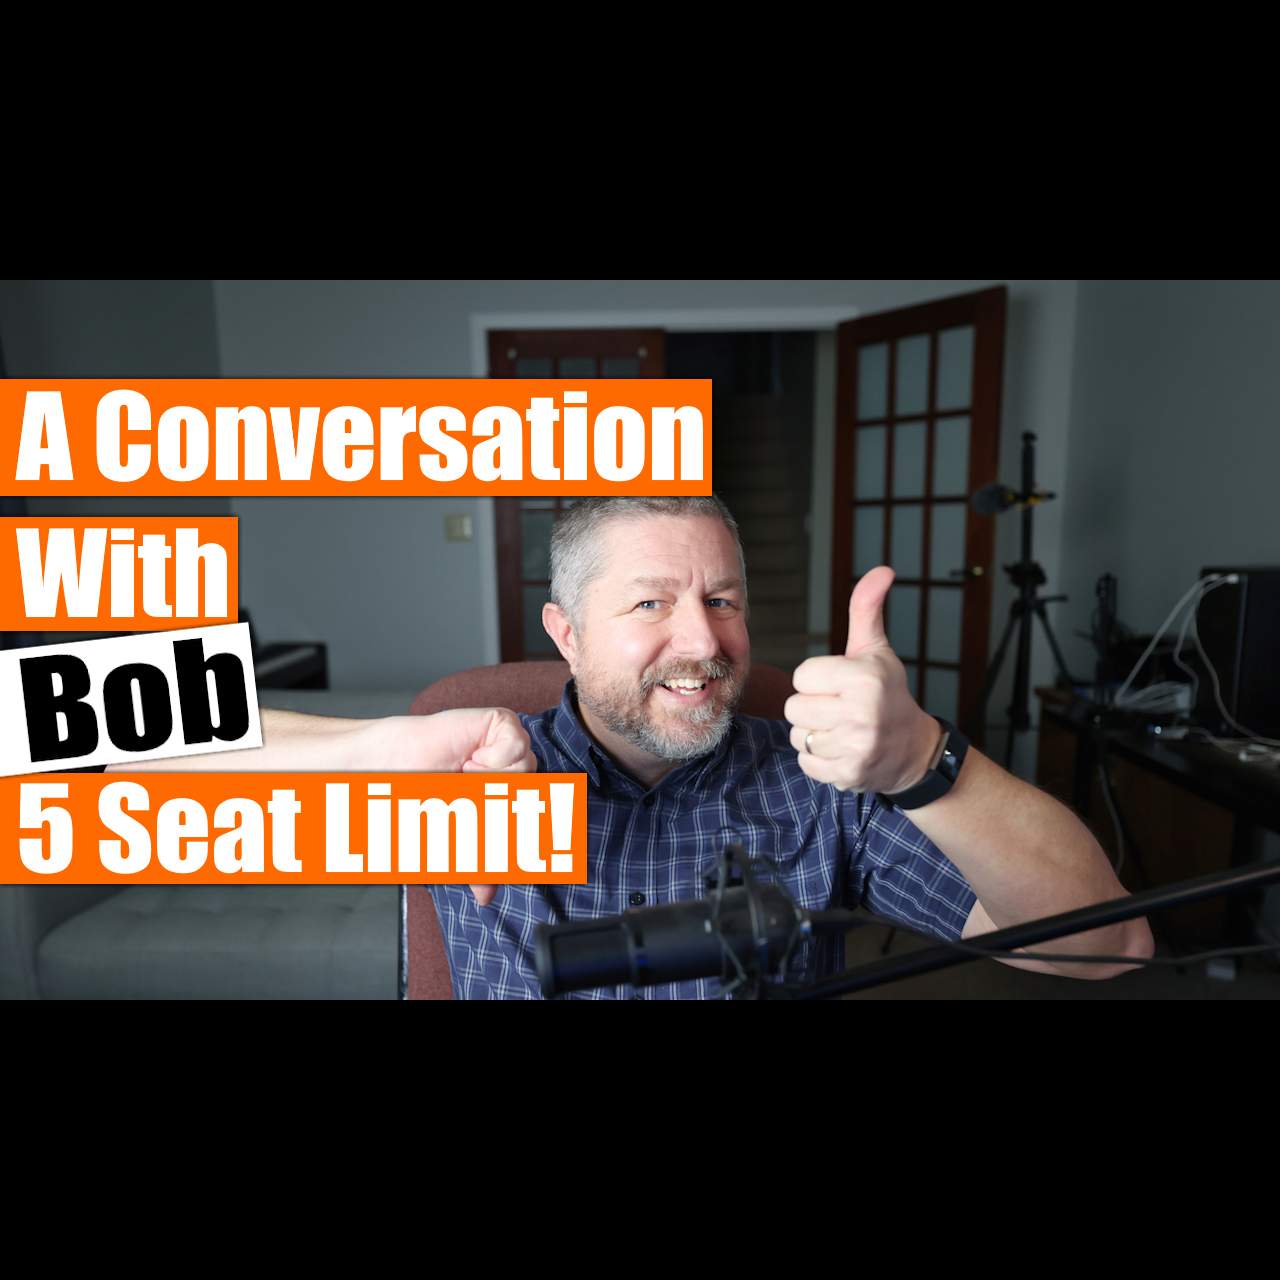 Uma conversa com Bob - terça-feira, 22 de agosto - 19h, horário padrão do leste - limite de 5 pessoas